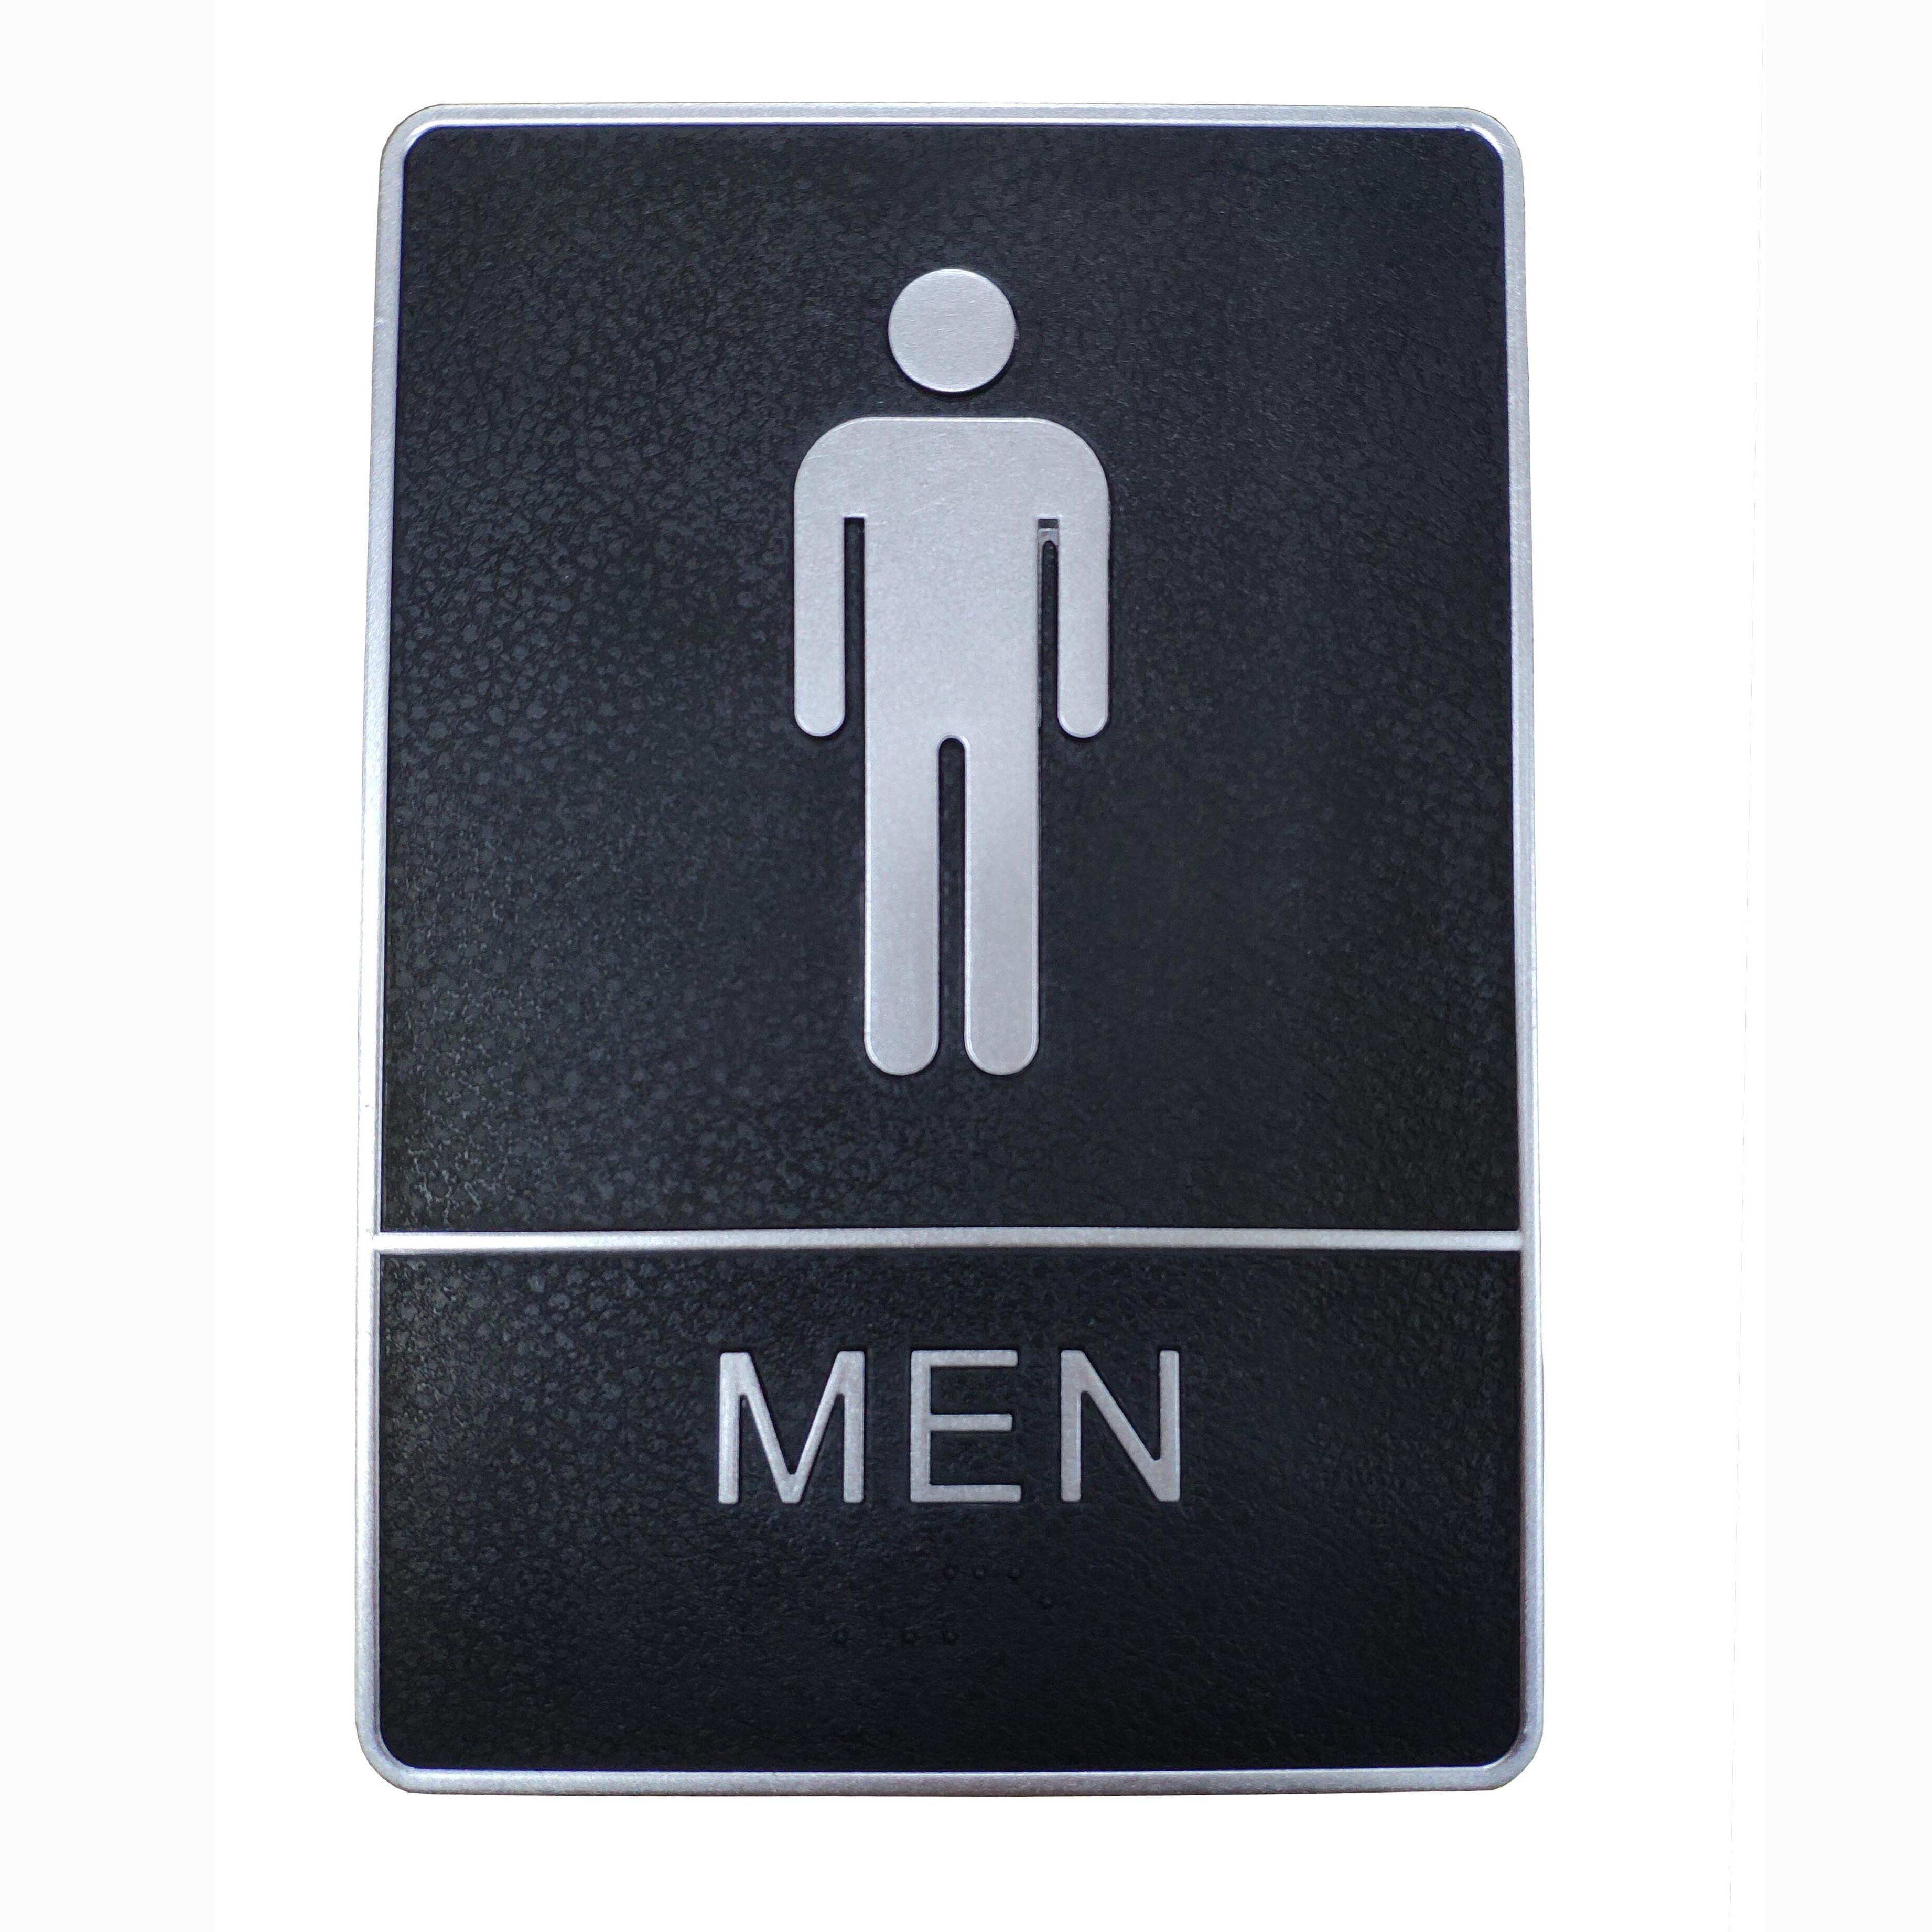 Bathroom game mens etiquette Urinal Etiquette